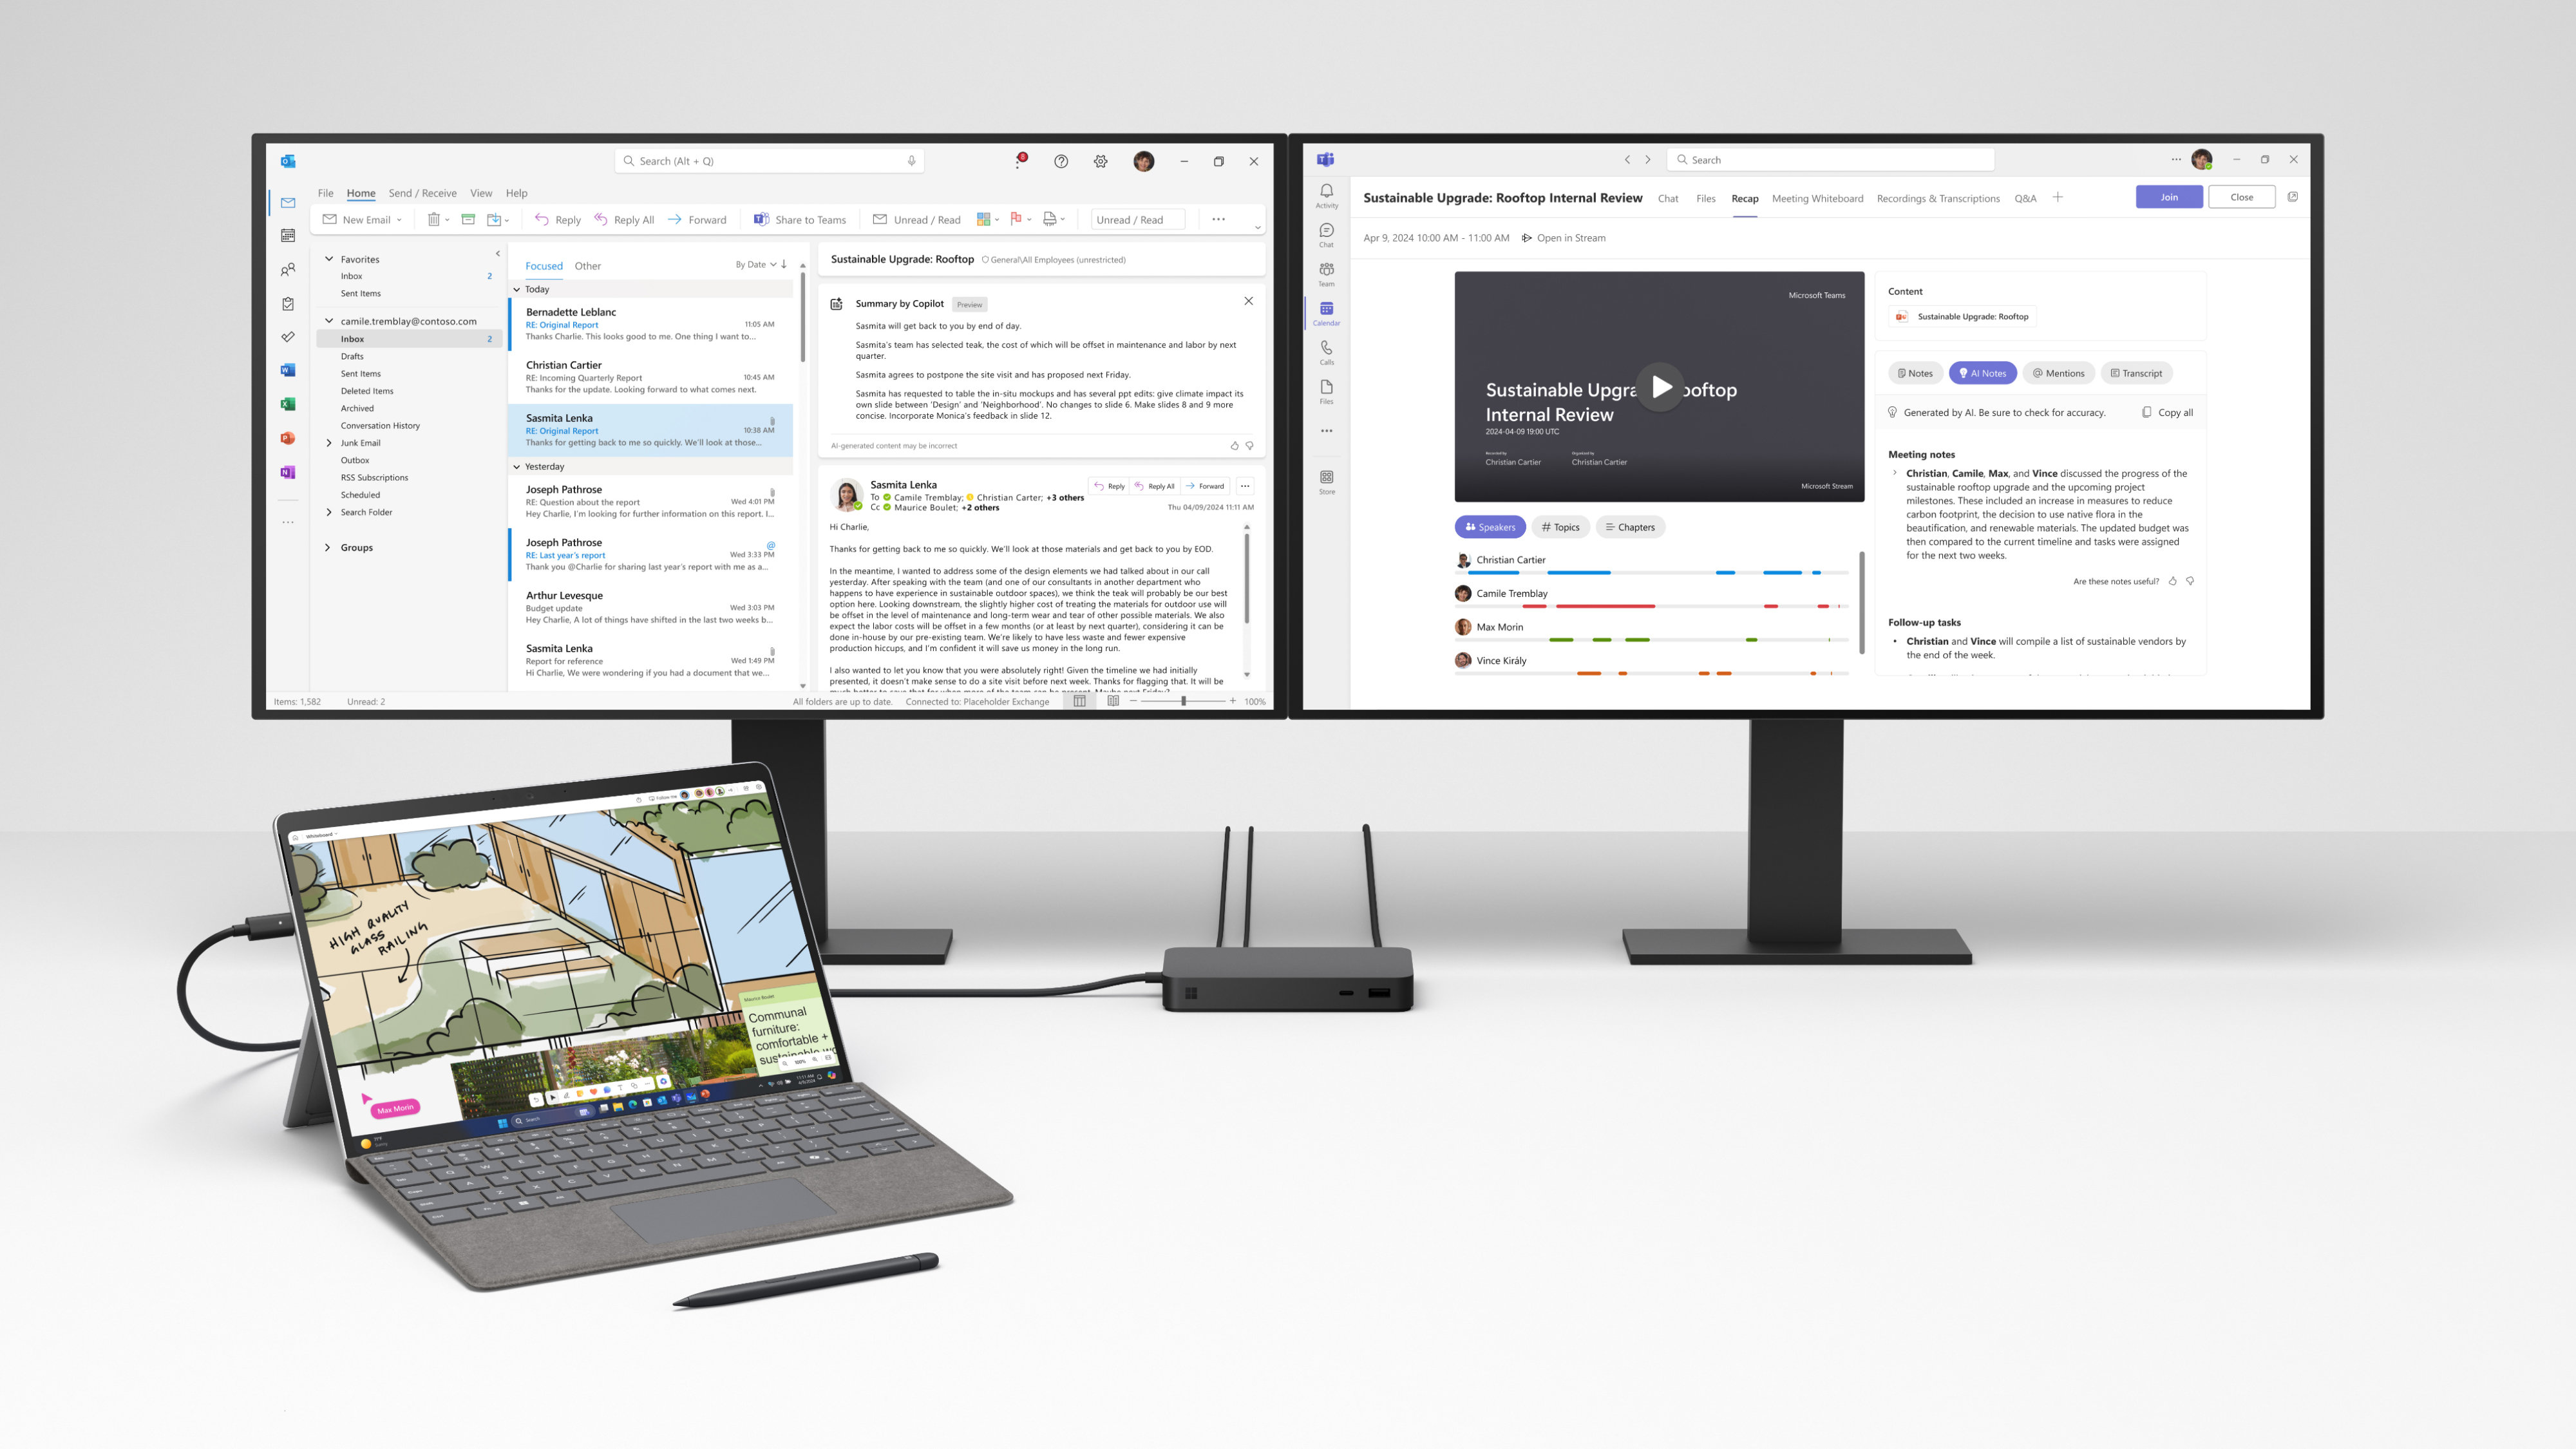 عرض جهاز Surface Pro 10 المتصل بشاشتين تعرضان تطبيقات Microsoft 365